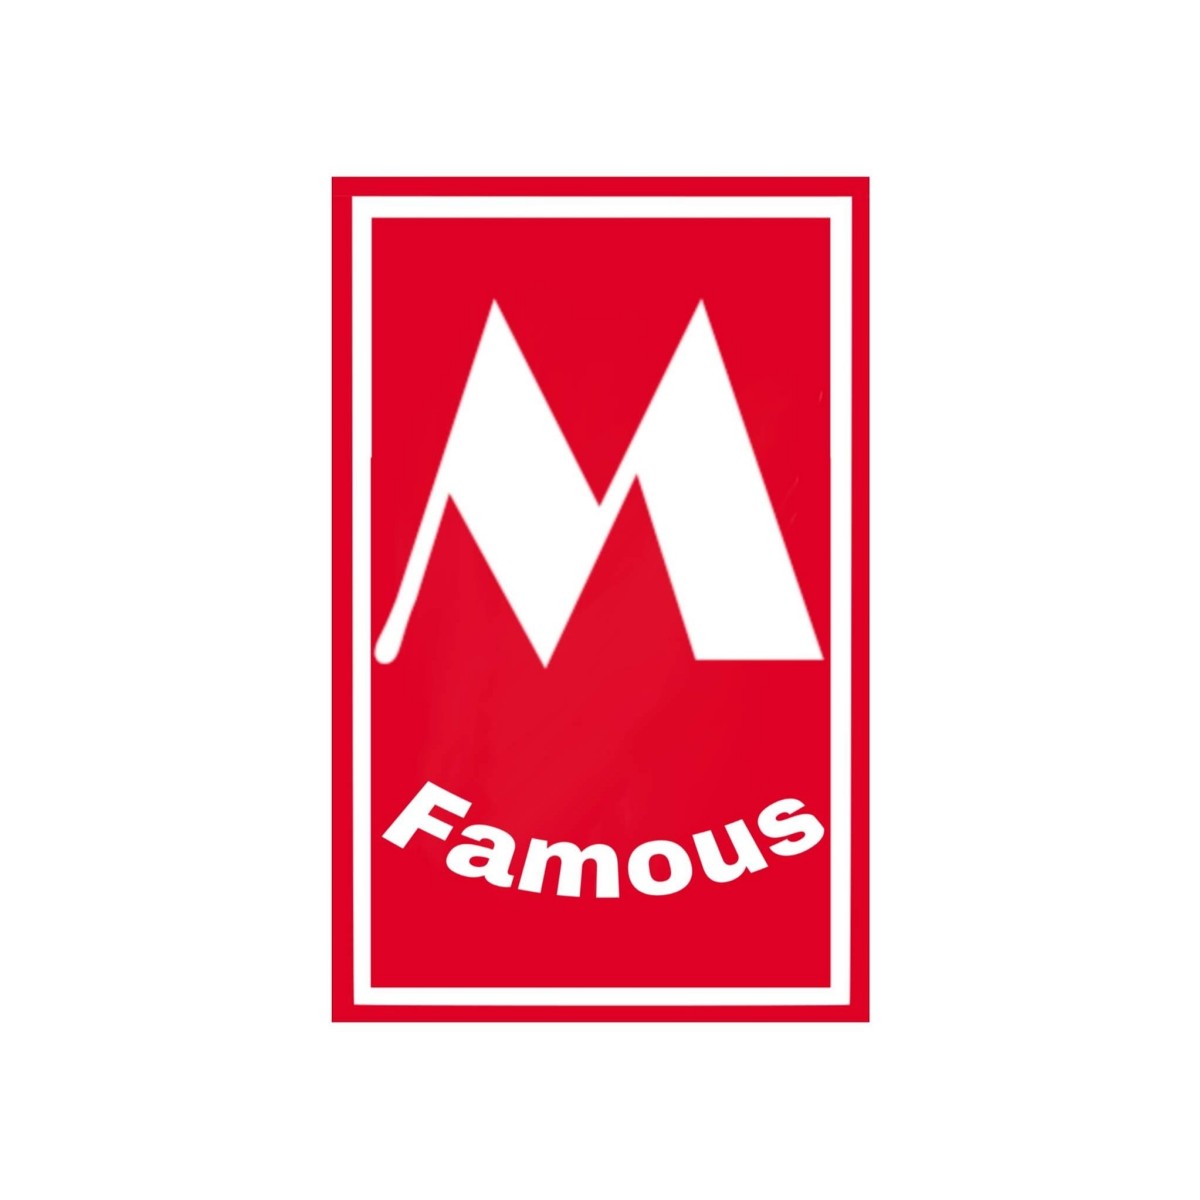 mfamous